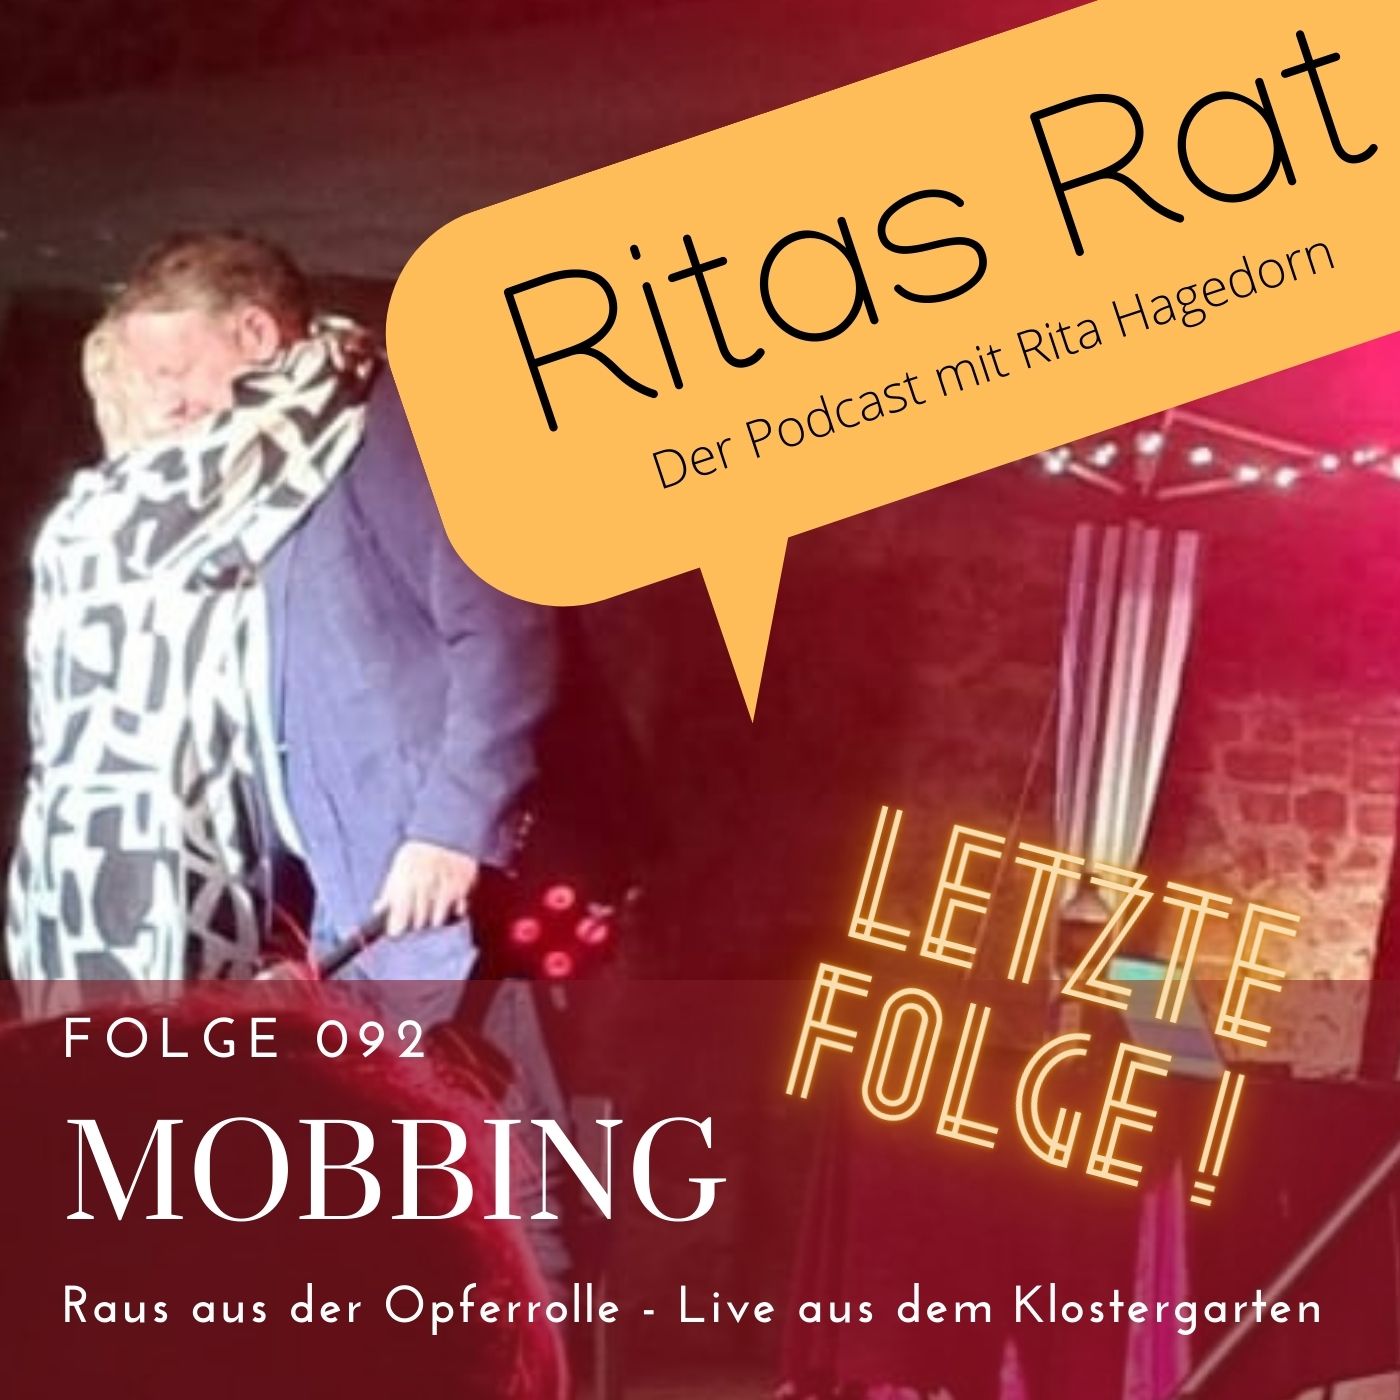 Folge 092 Mobbing - Raus aus der Opferrolle - Live aus dem Klostergarten -  Ritas Rat - Podcast